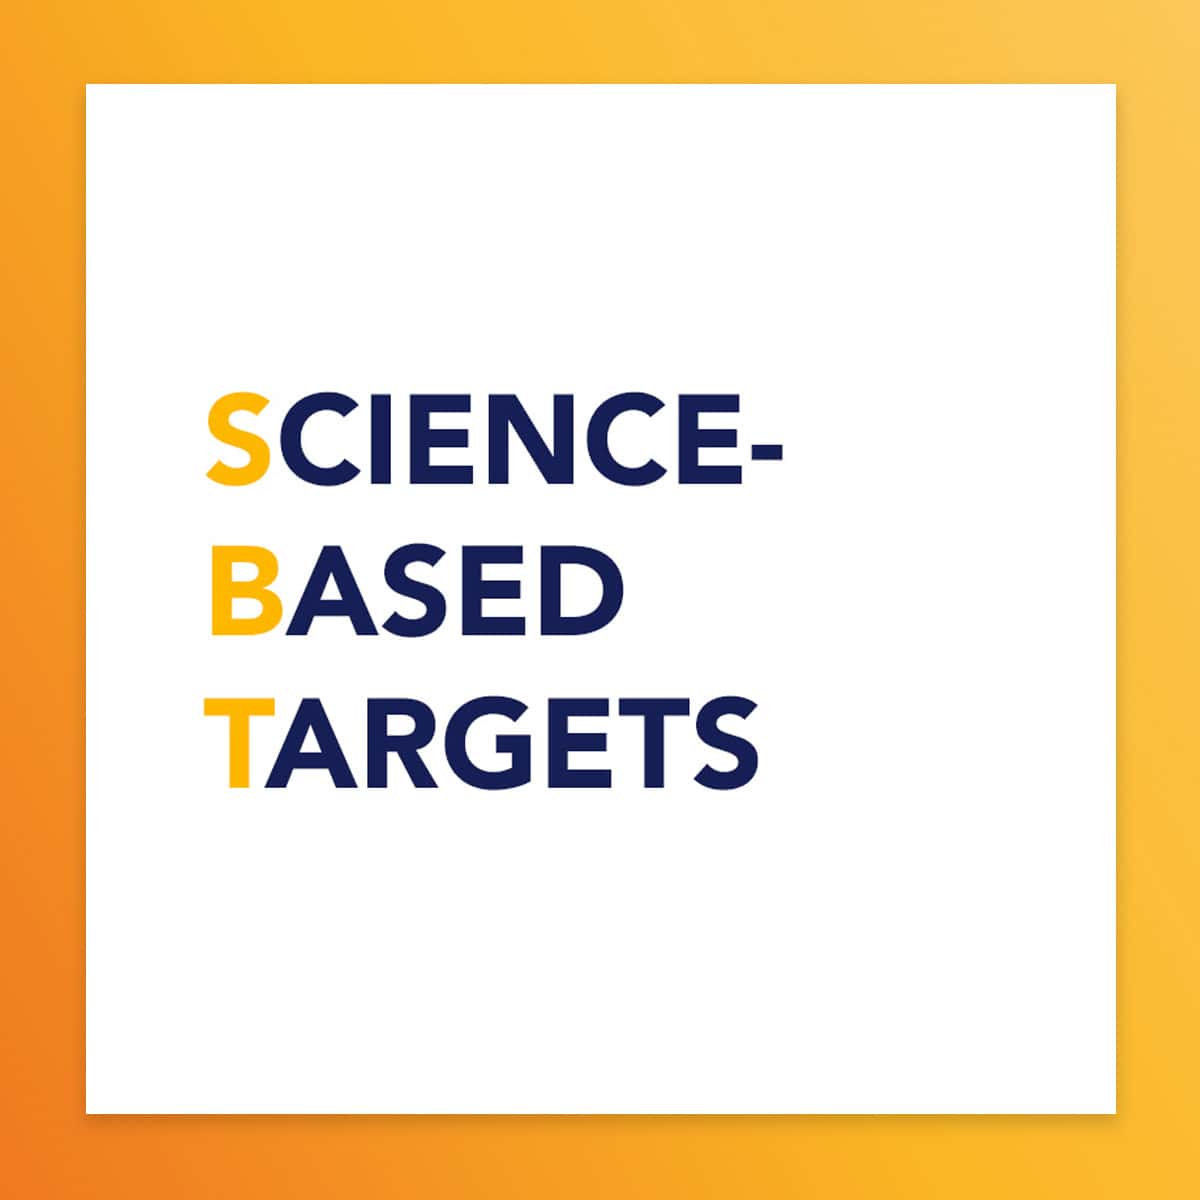 Illustration science based targets